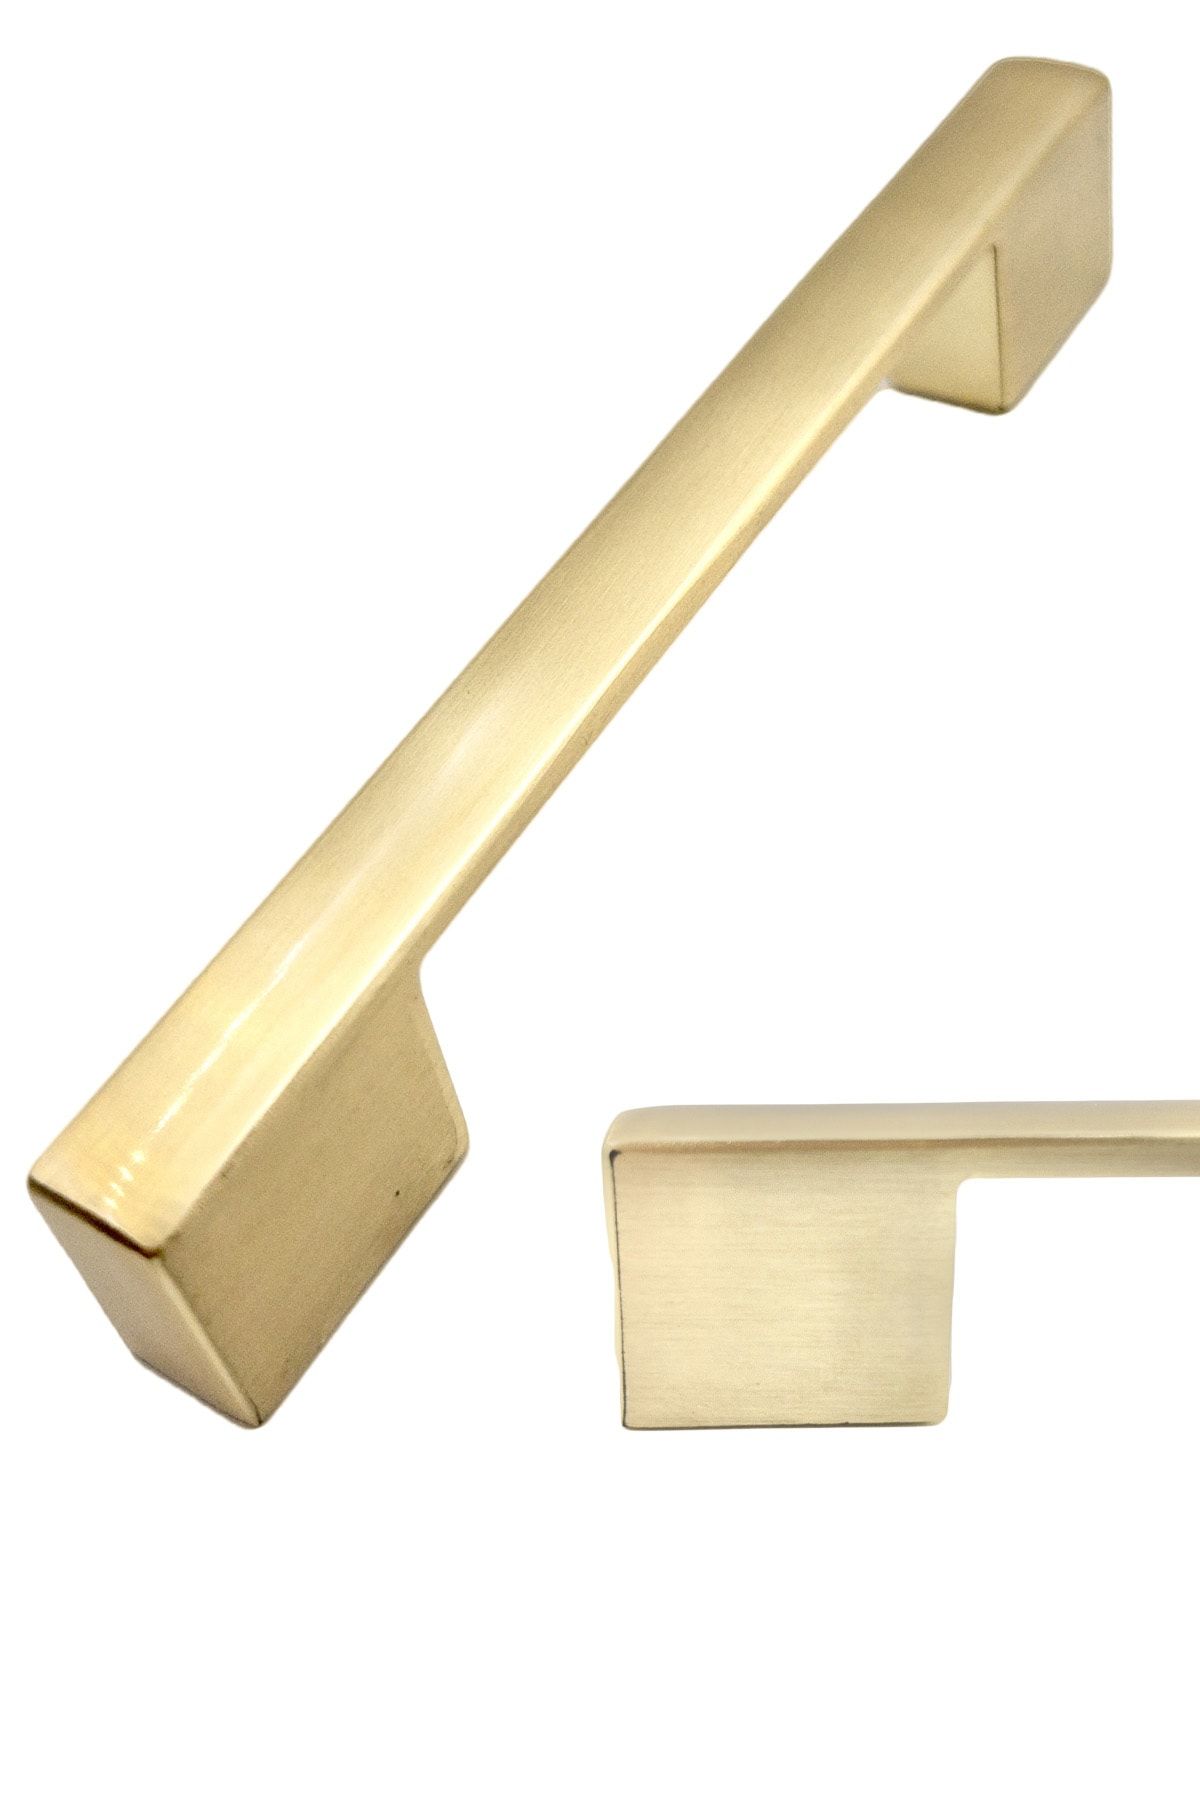 bablife Kale Nergis Köprü 224mm-256mm Mat Altın Metal Lüks Çekmece Dolap Mobilya Kulpları